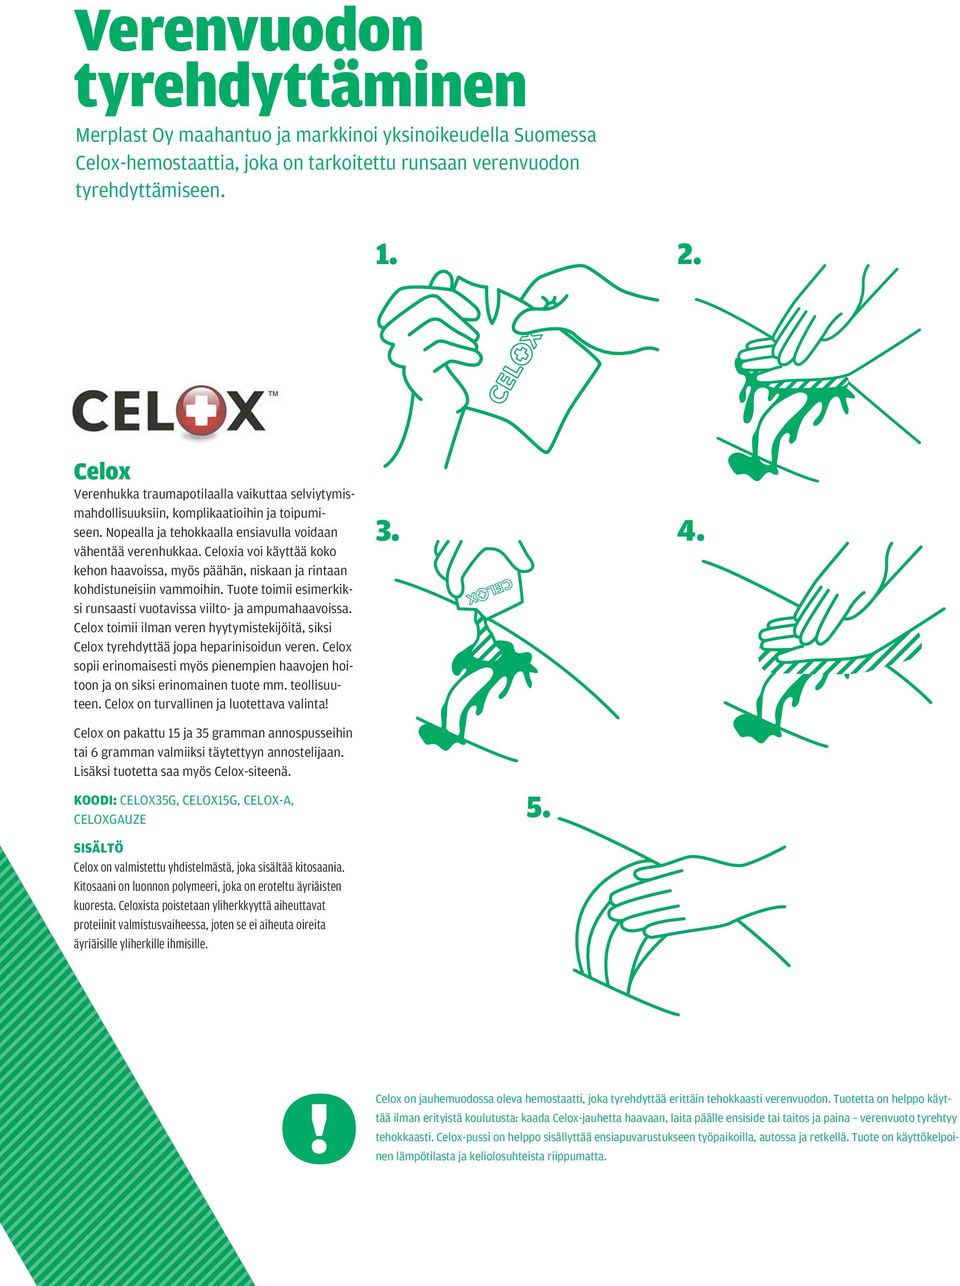 Celoxia voi käyttää koko kehon haavoissa, myös päähän, niskaan ja rintaan kohdistuneisiin vammoihin. Tuote toimii esimerkiksi runsaasti vuotavissa viilto- ja ampumahaavoissa.